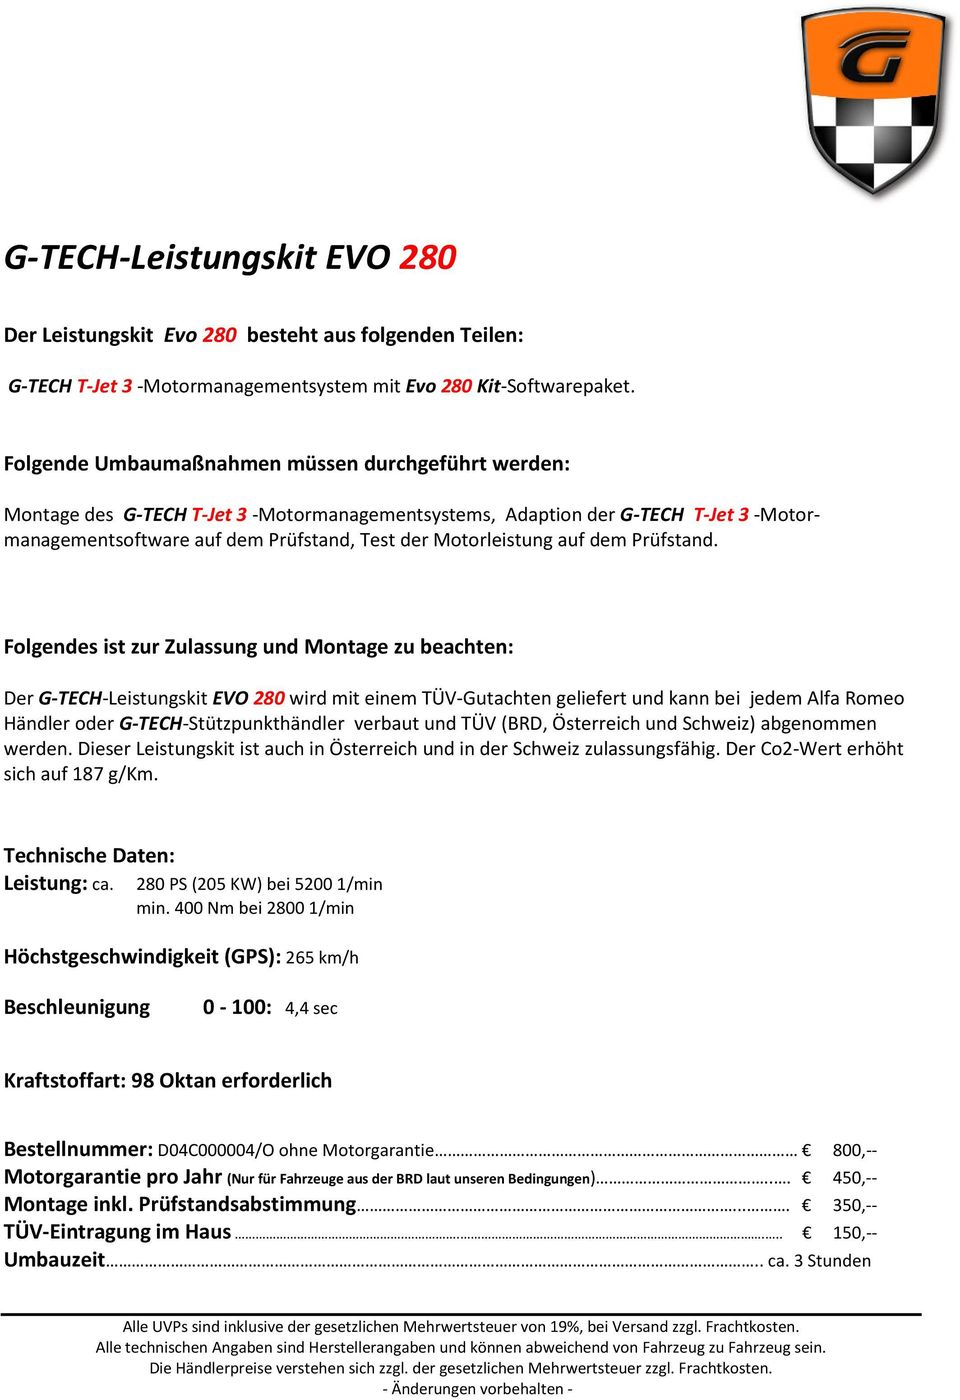 Der G-TECH-Leistungskit EVO 280 wird mit einem TÜV-Gutachten geliefert und kann bei jedem Alfa Romeo Händler oder G-TECH-Stützpunkthändler verbaut und TÜV (BRD, Österreich und Schweiz) abgenommen